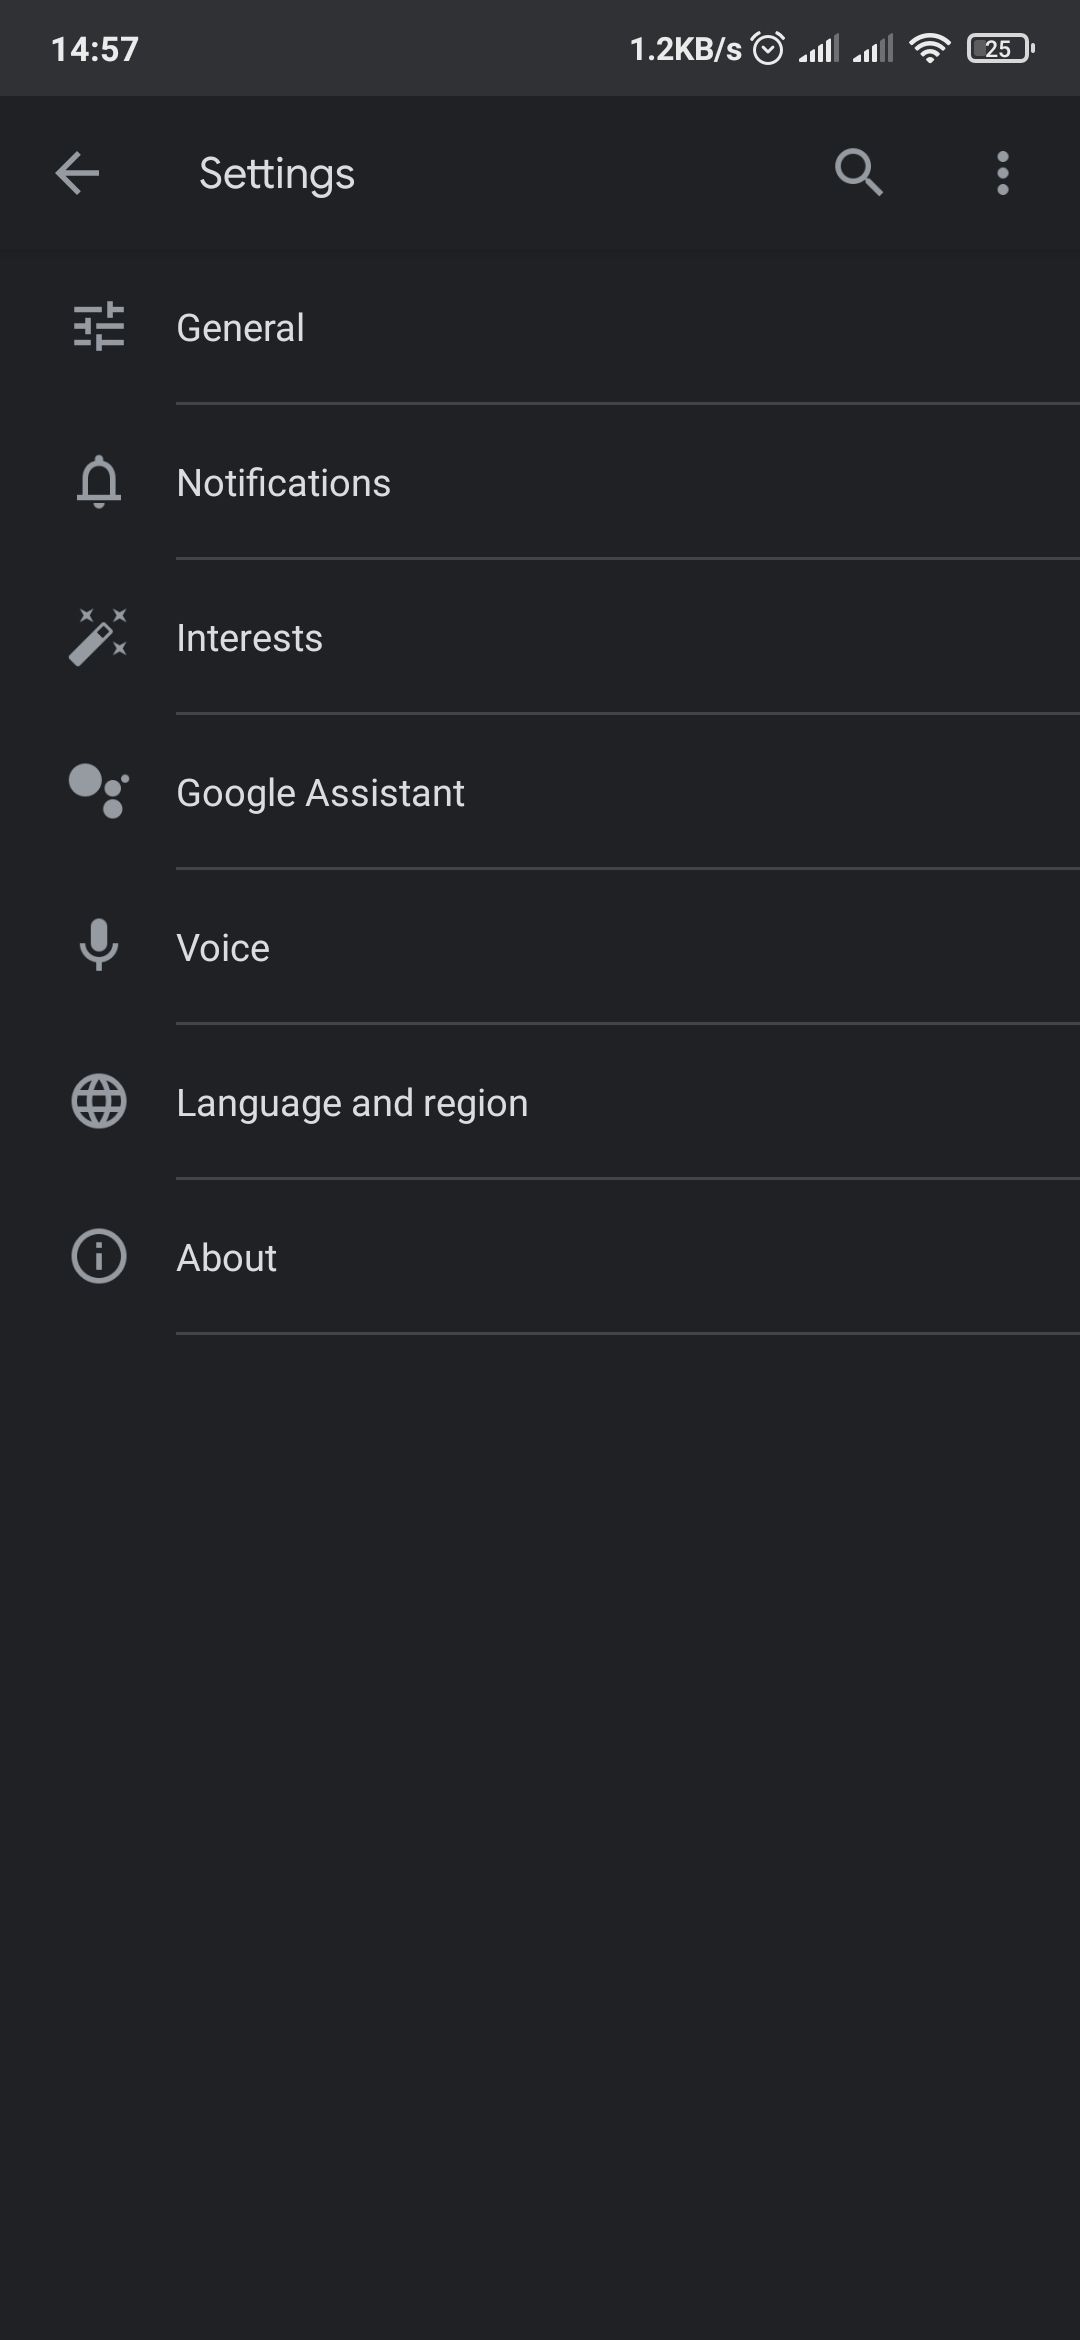 Settings menu inside Google app